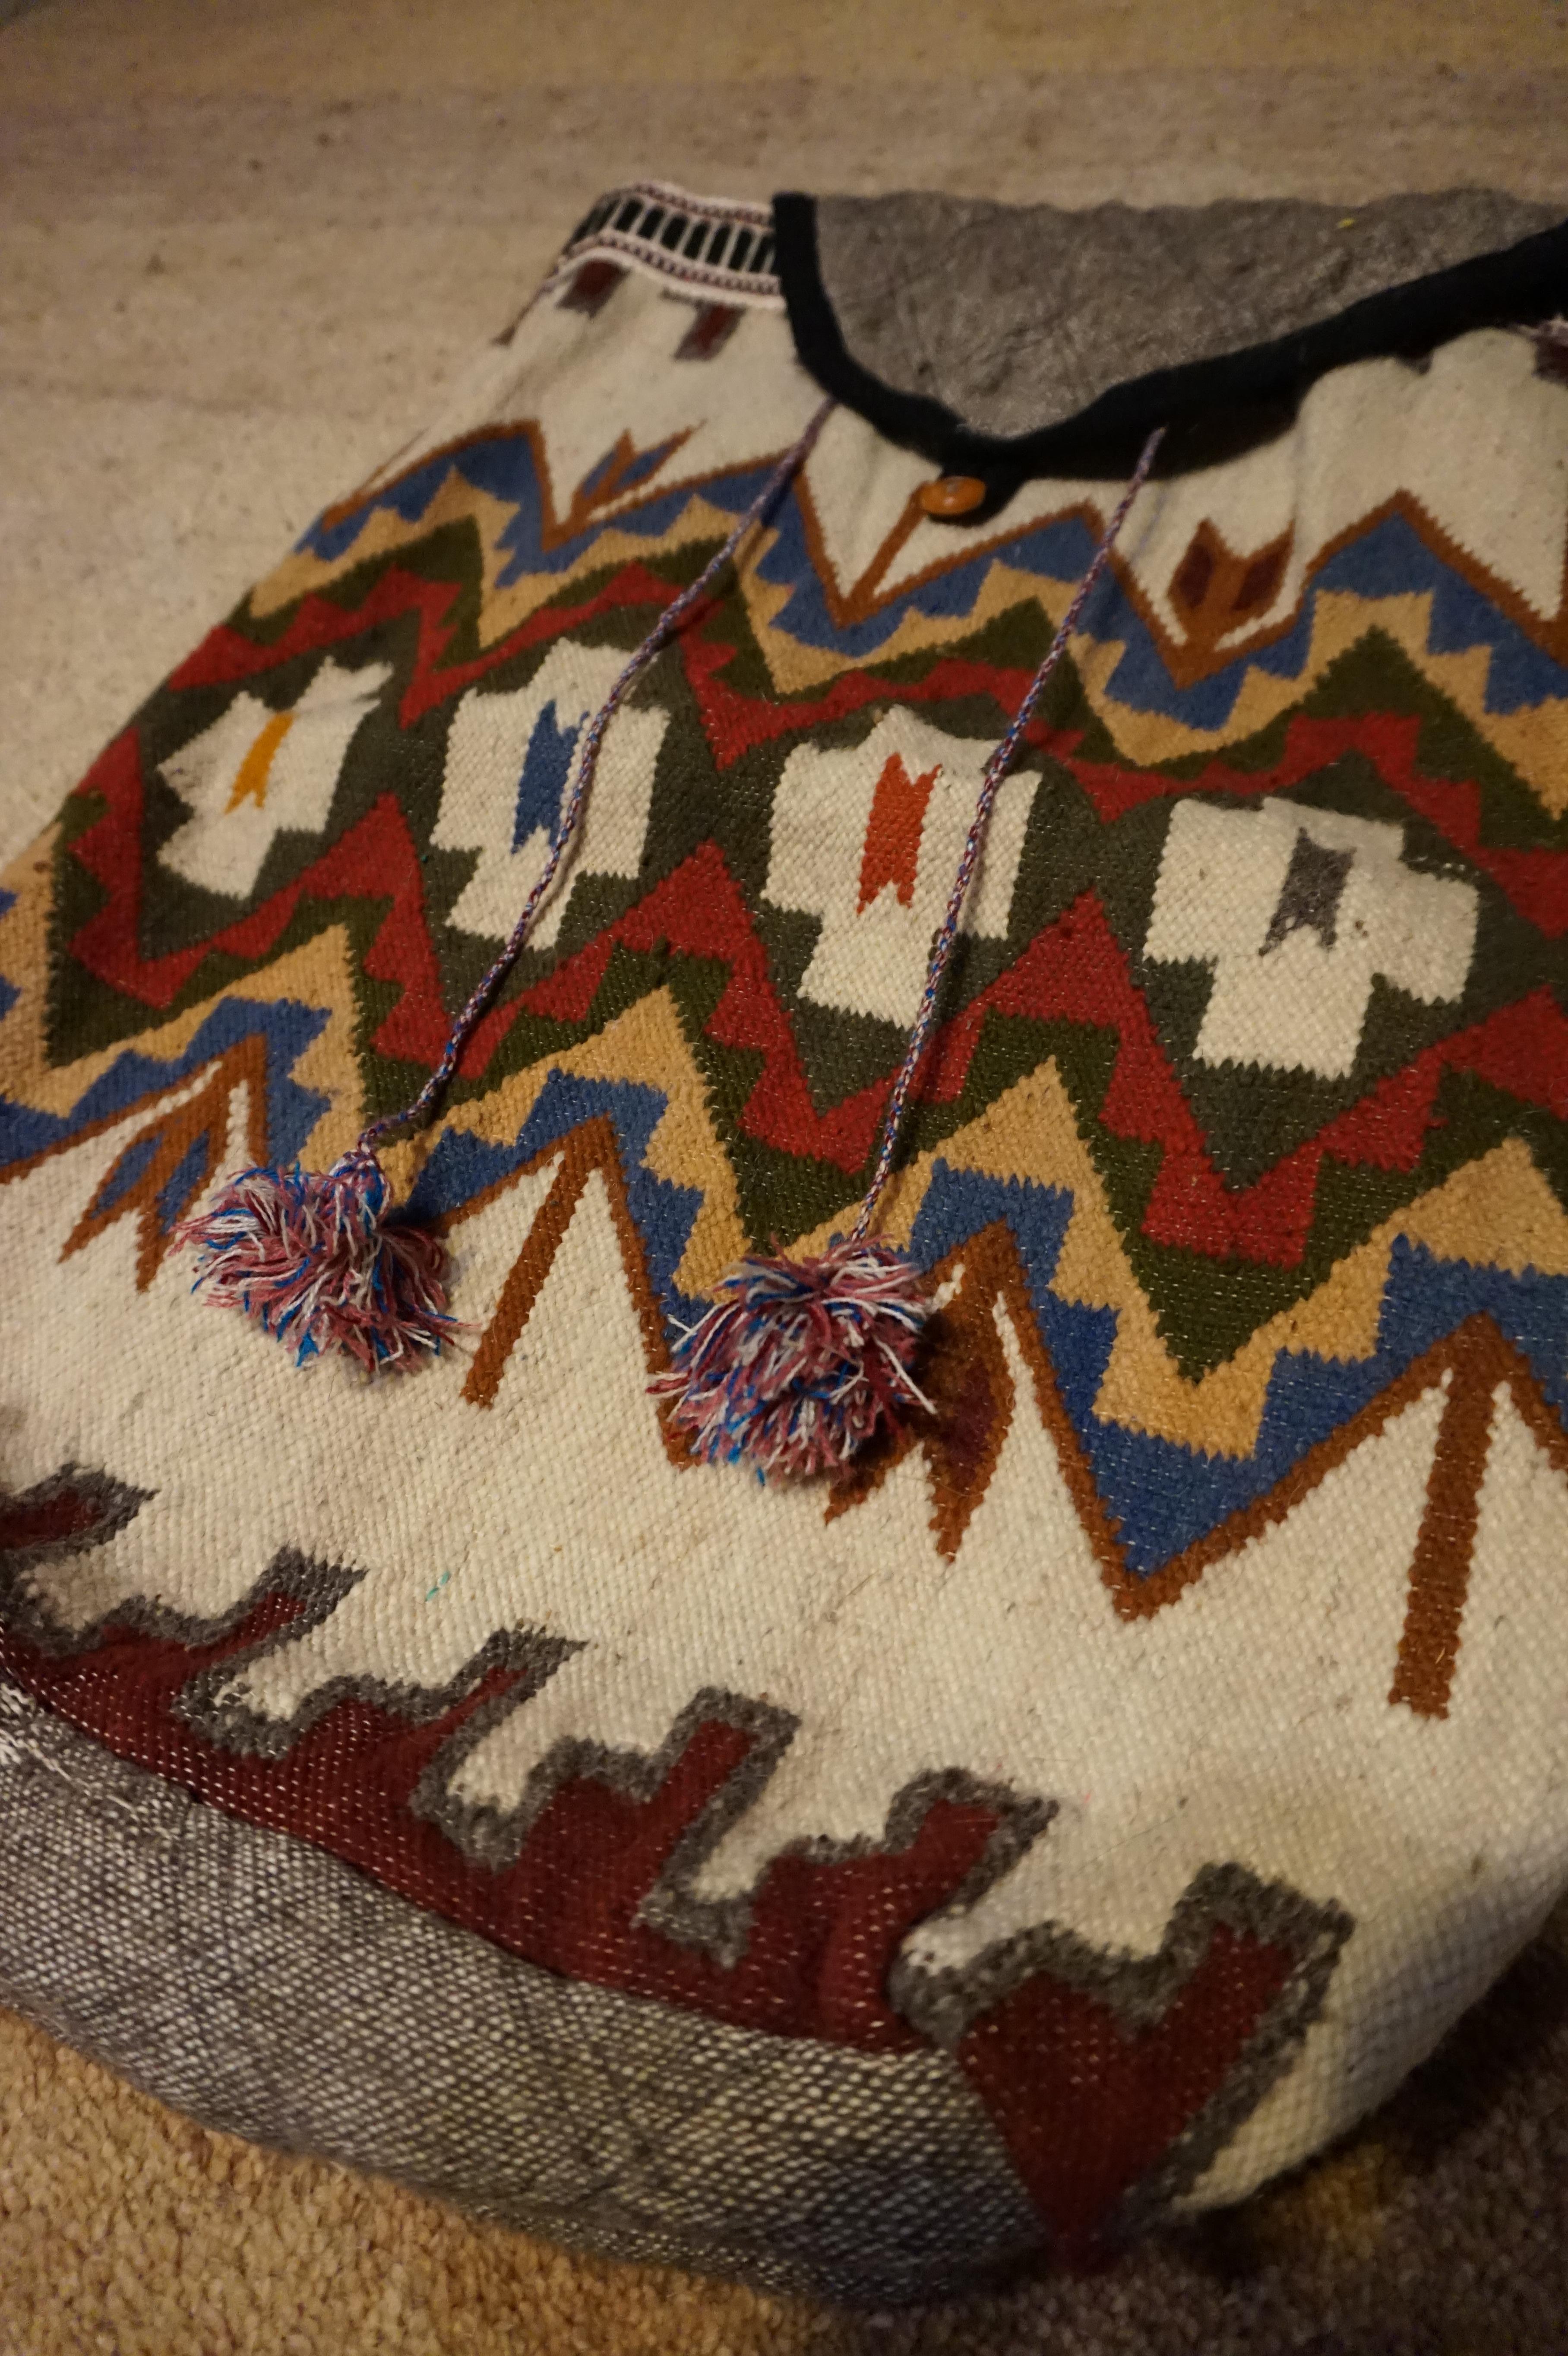 Türkischer handgeknüpfter Stammesrucksack mit Babytrage. Großes Format. Seltene und in gutem Zustand mit Farben noch lebendig,

etwa 1940er Jahre.